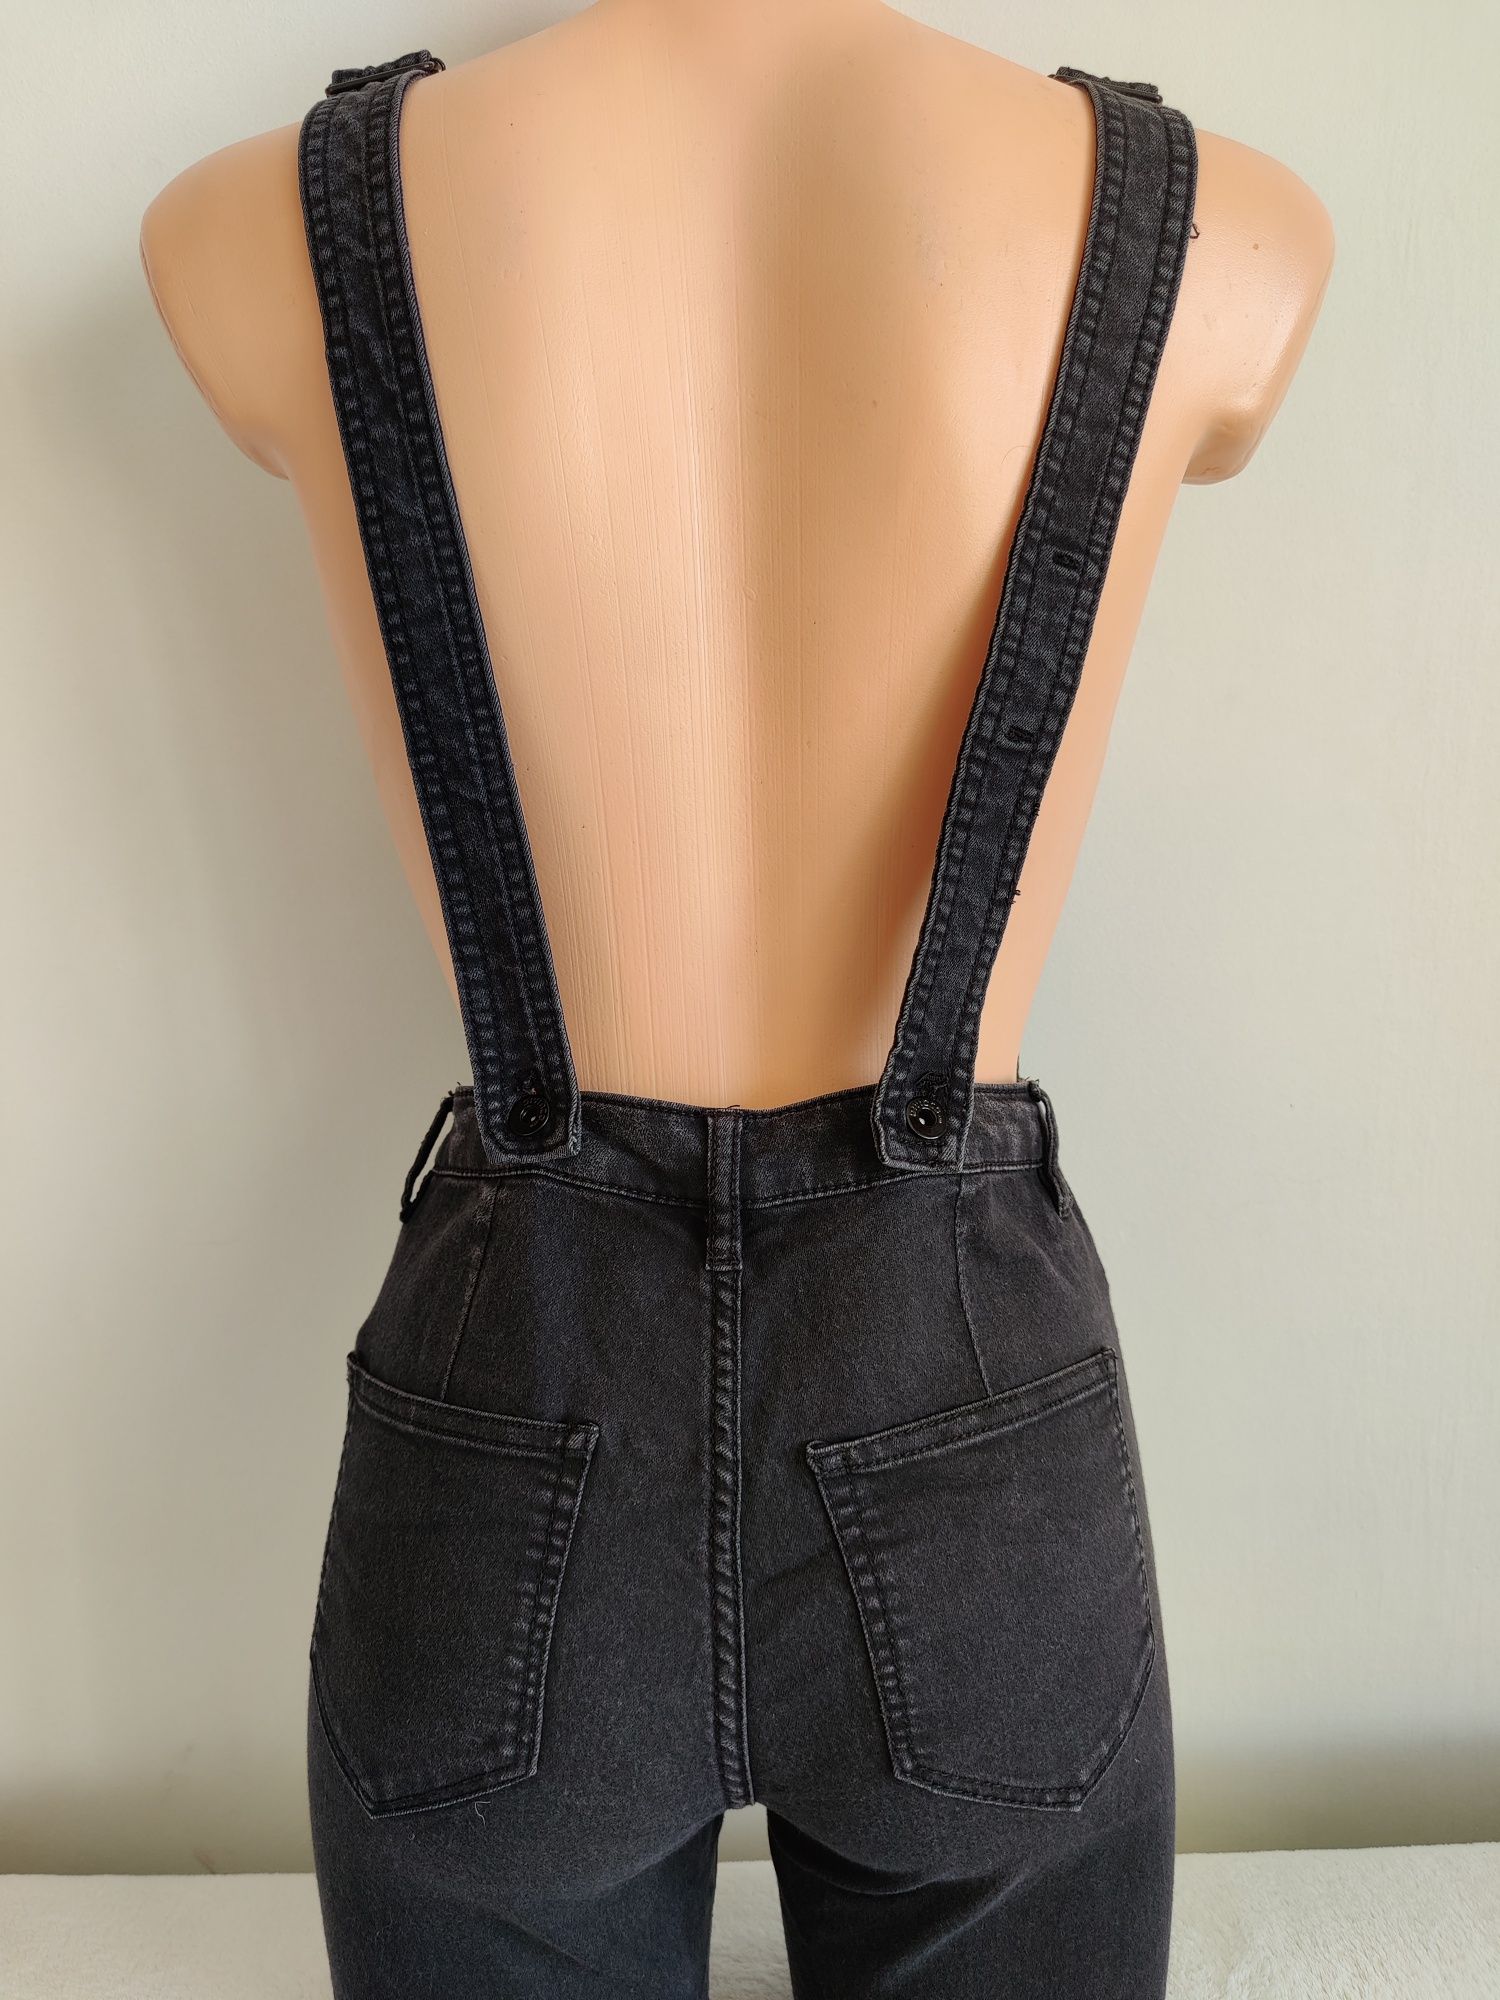 Spodnie ogrodniczki H&M rurki jeansowe 34 XS 160cm z elastnem